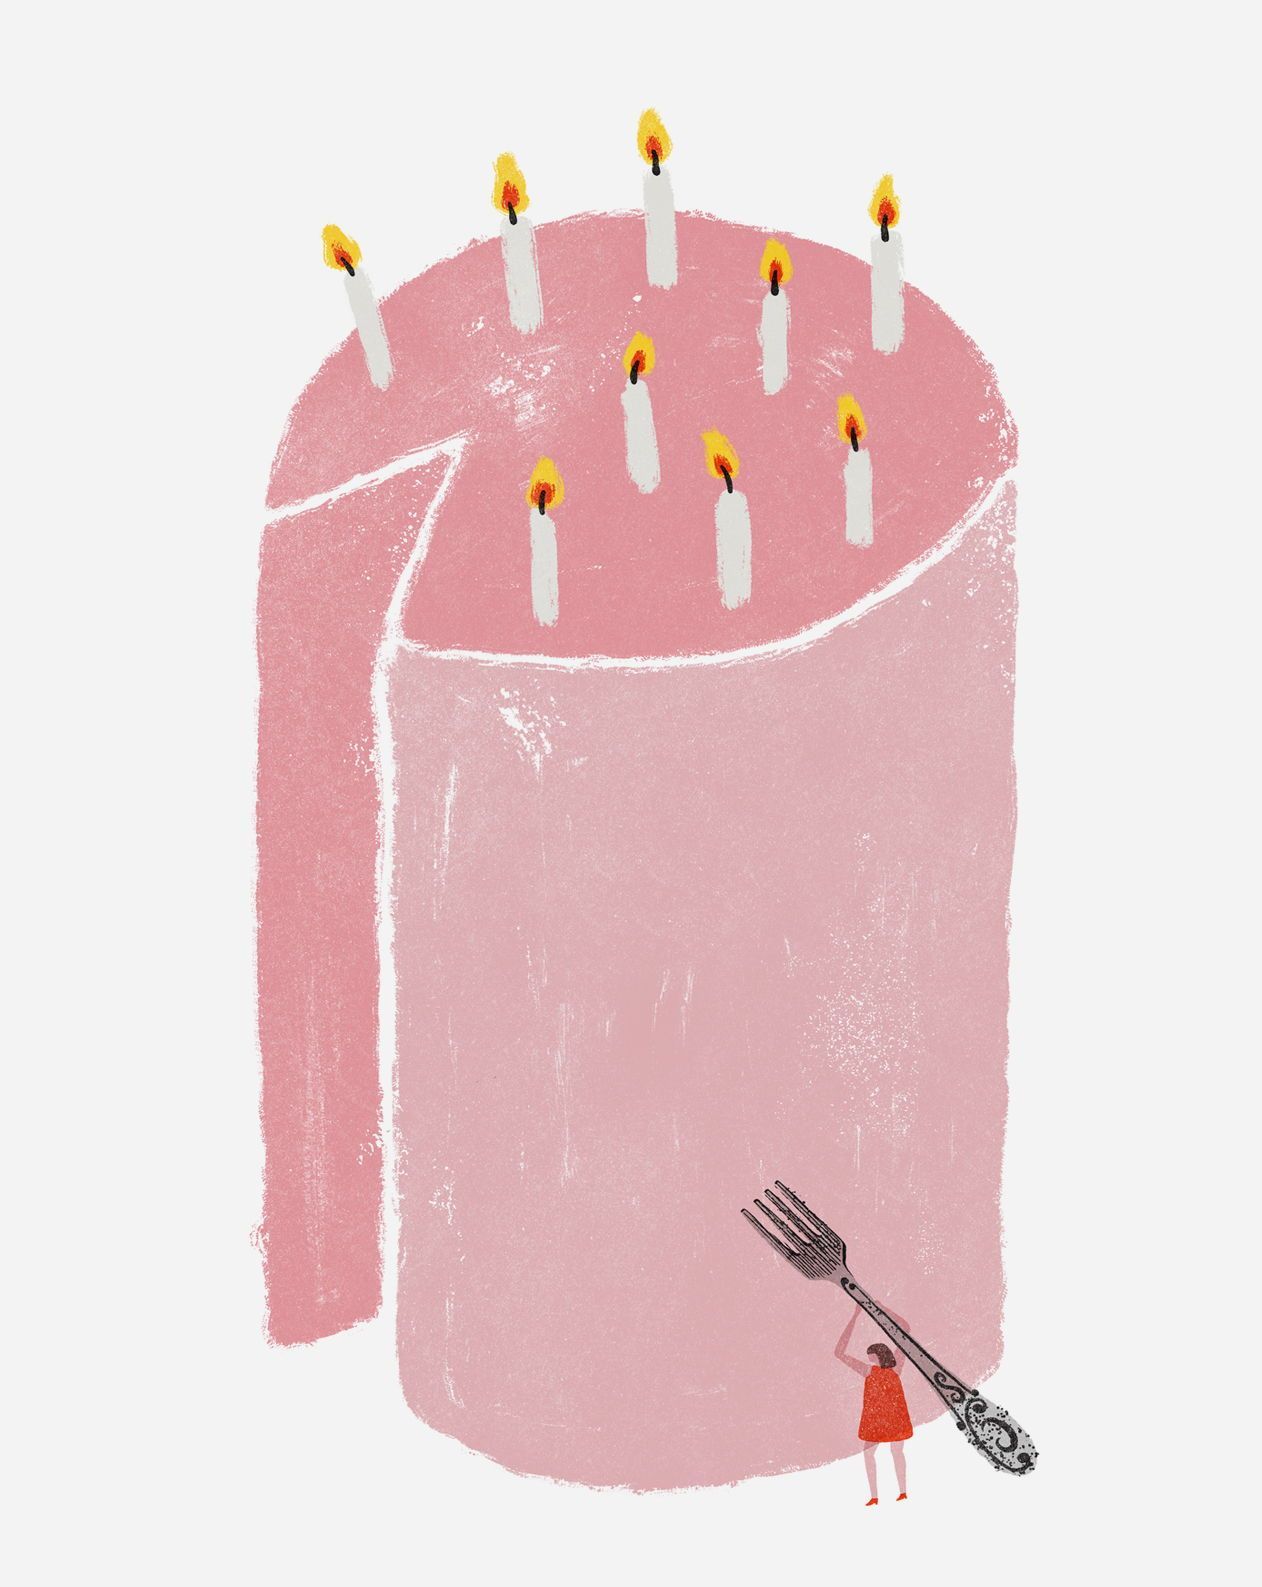 15 cake Illustration illustrators ideas